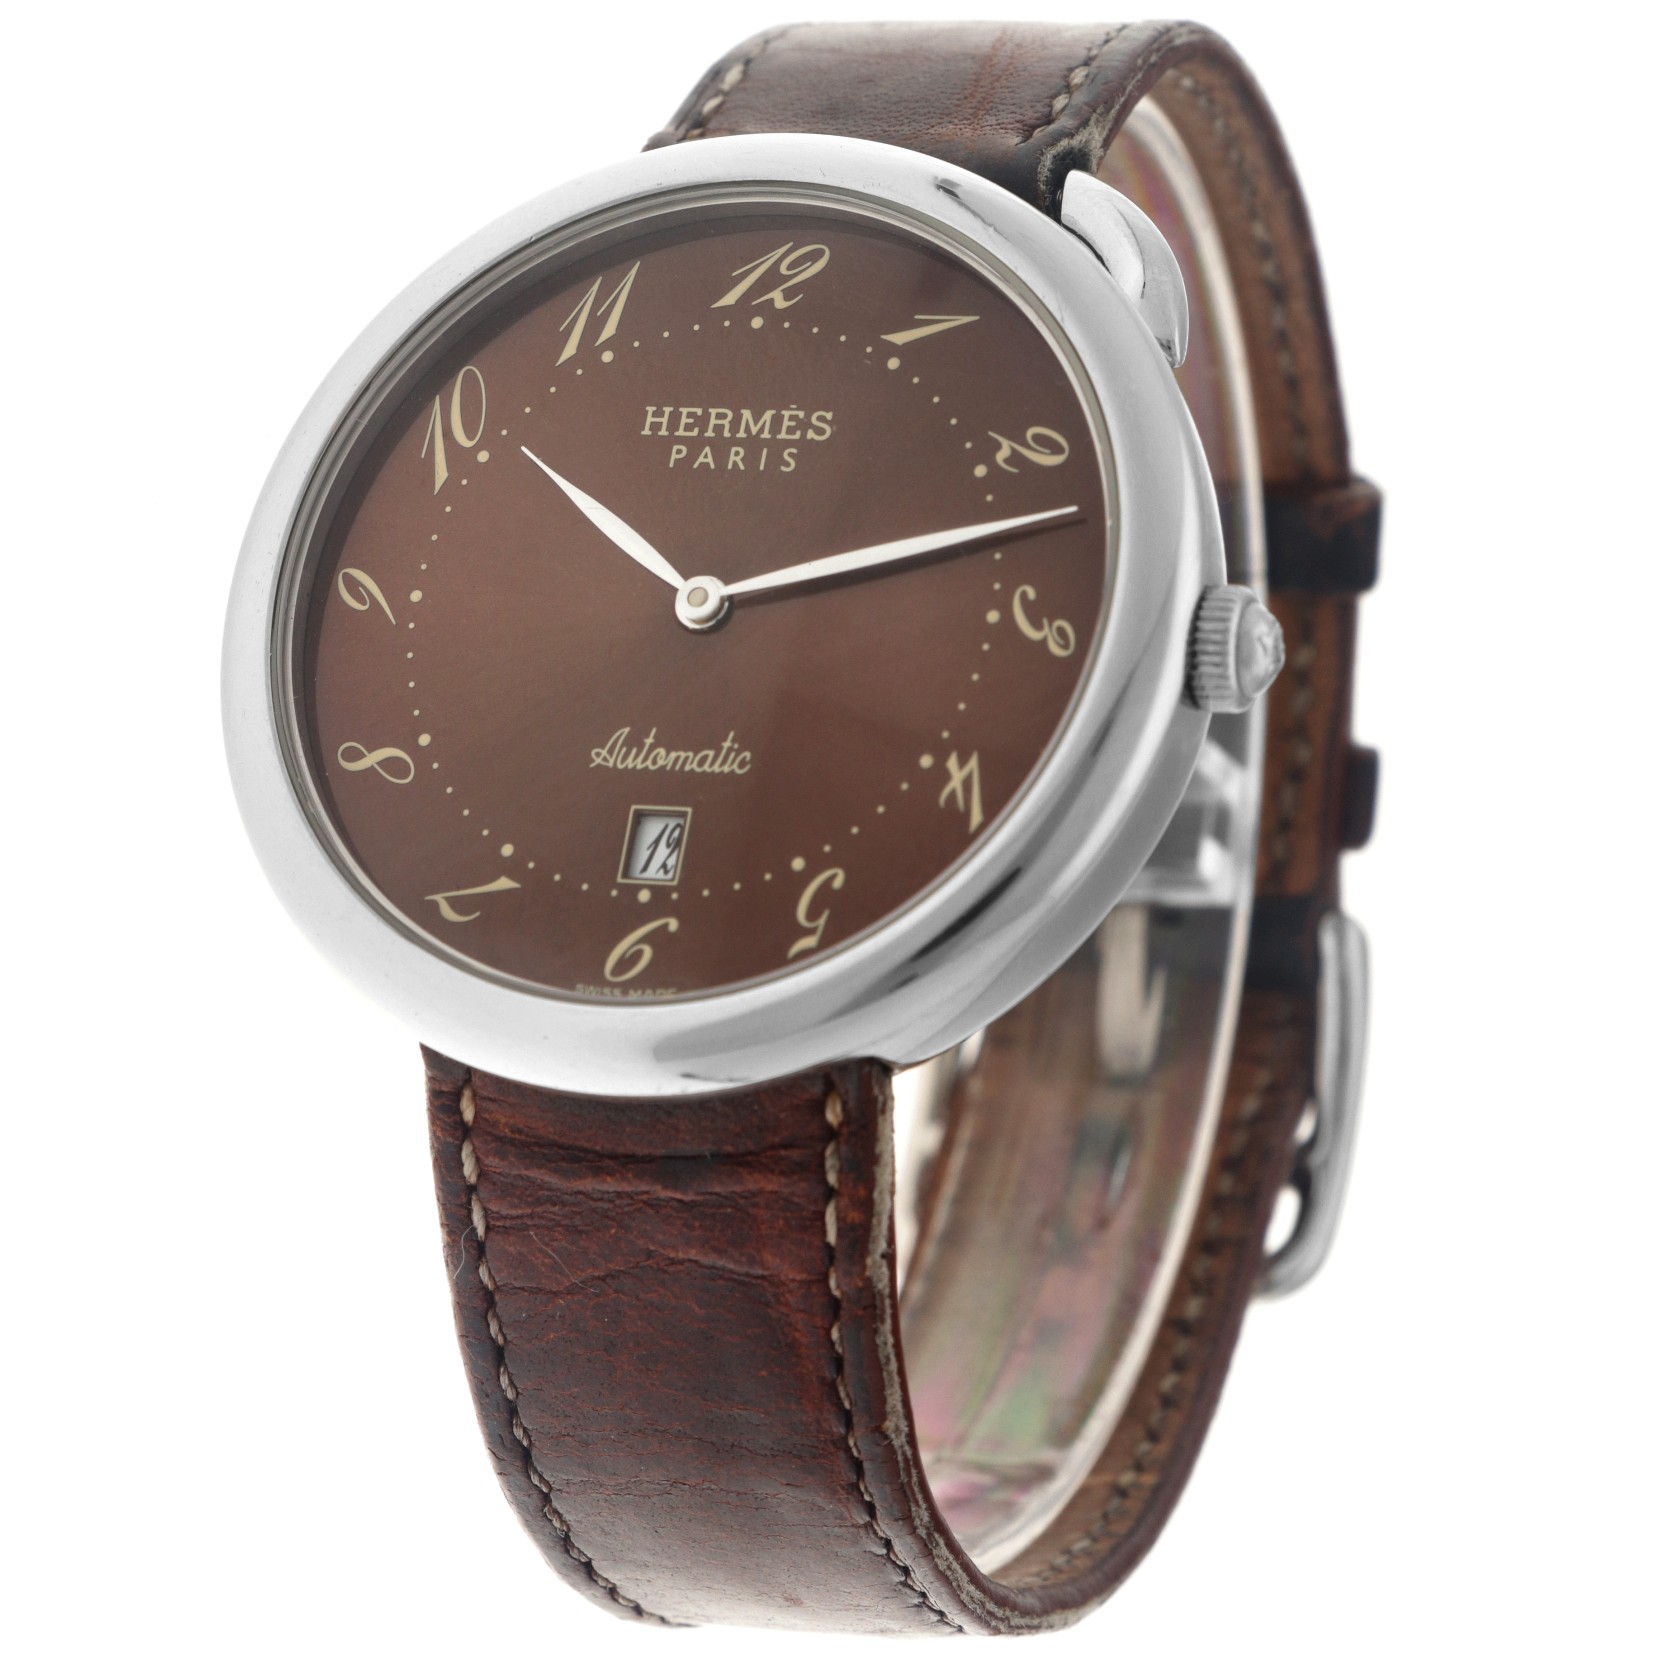 No Reserve - Hermès Arceau AR4.810 - Men's watch.  - Image 2 of 5